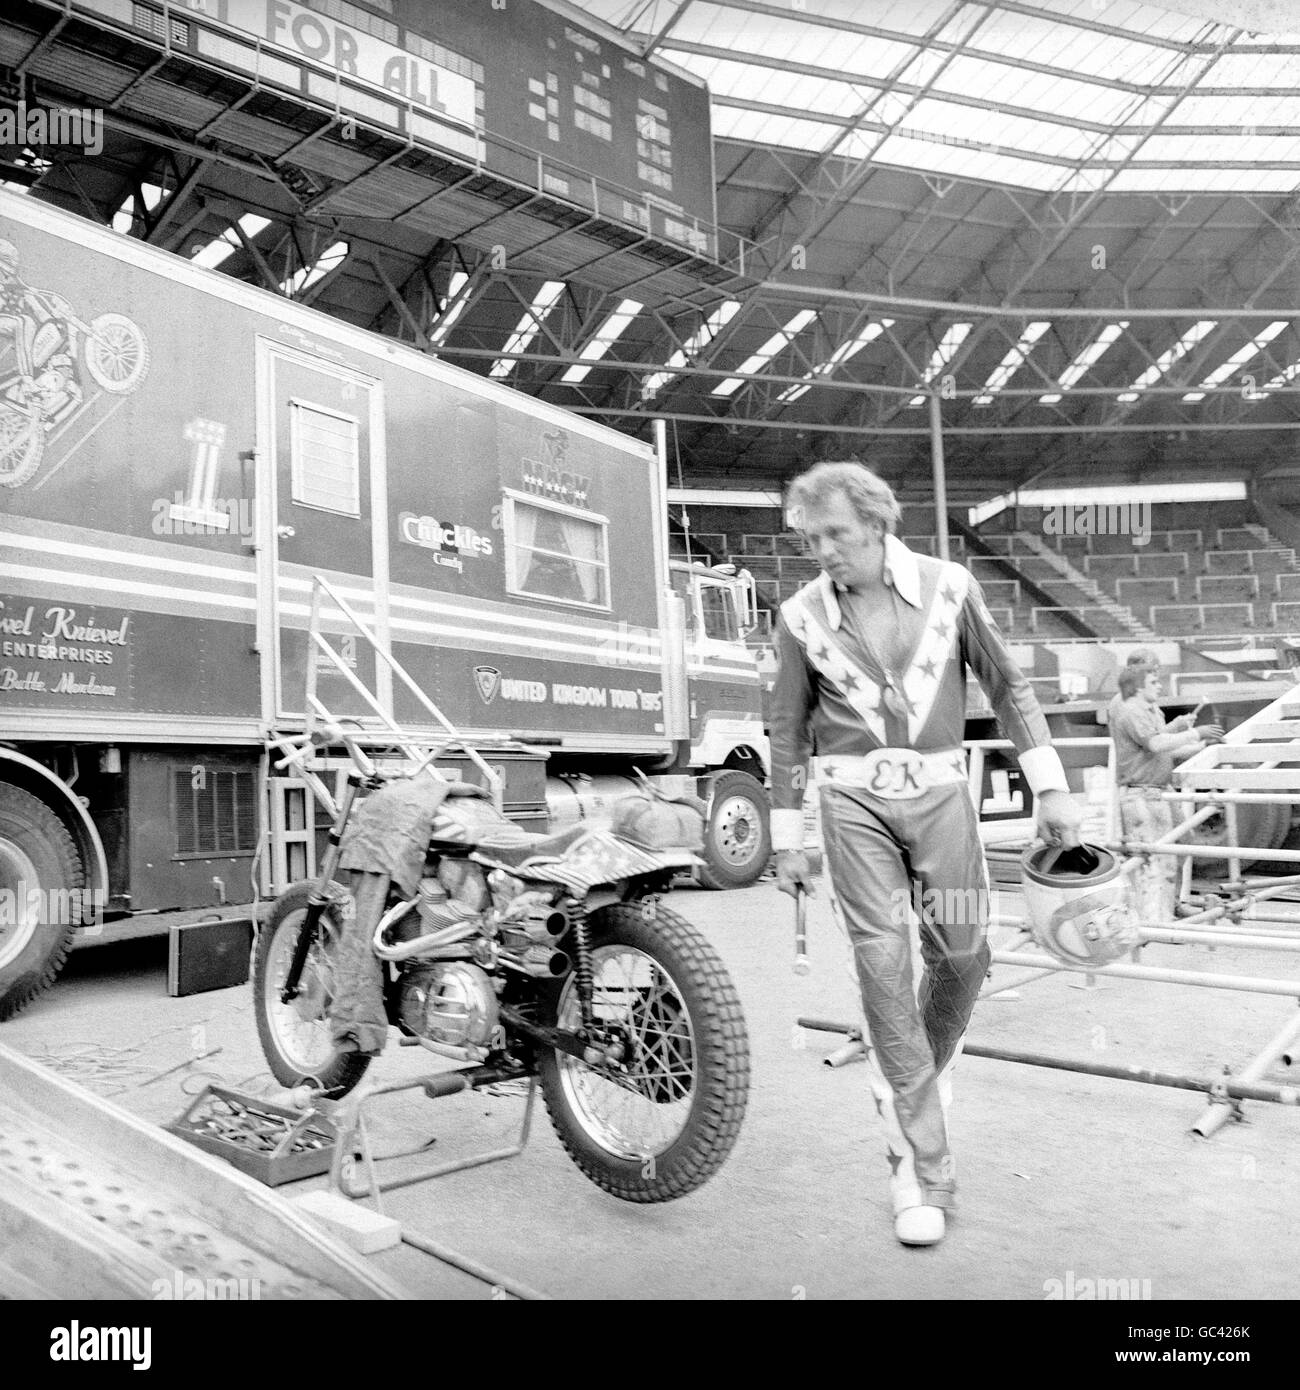 Il pilota stunt Evel Knievel controlla la sua moto Harley Davidson, prima di tentare di saltare oltre 13 autobus a due piani allo stadio di Wembley. Foto Stock